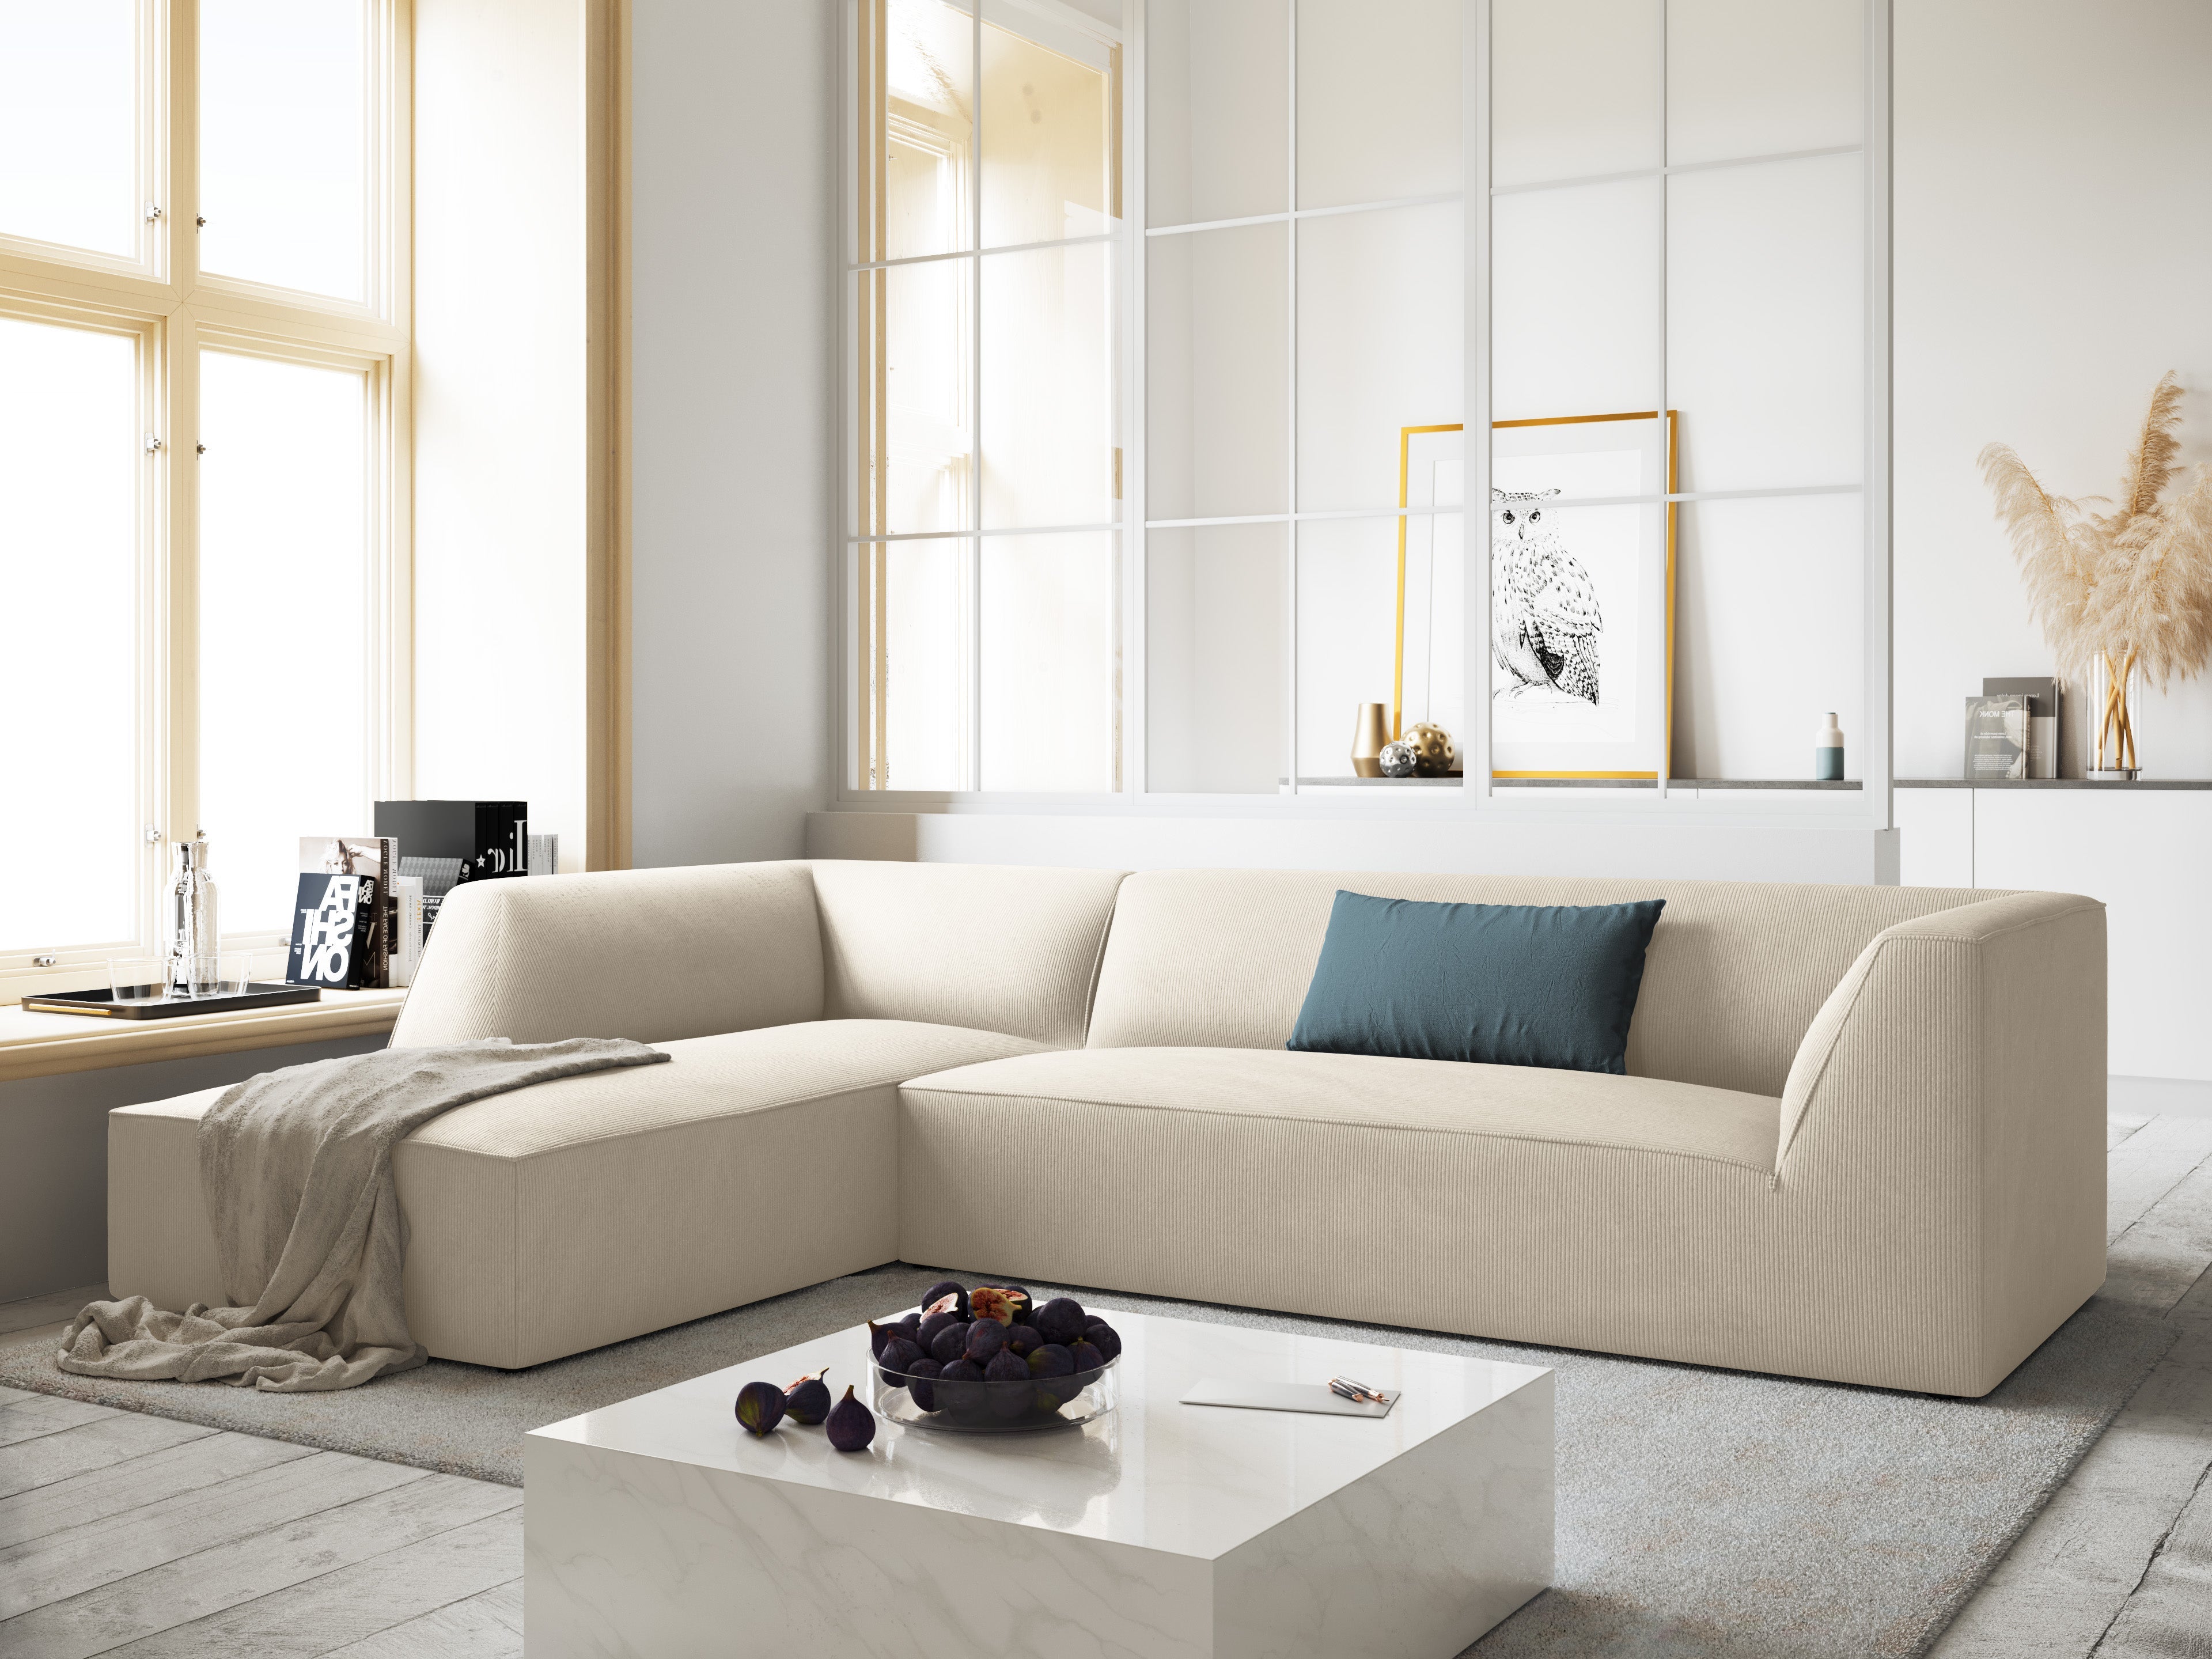 4-person corner for minimalist interiors